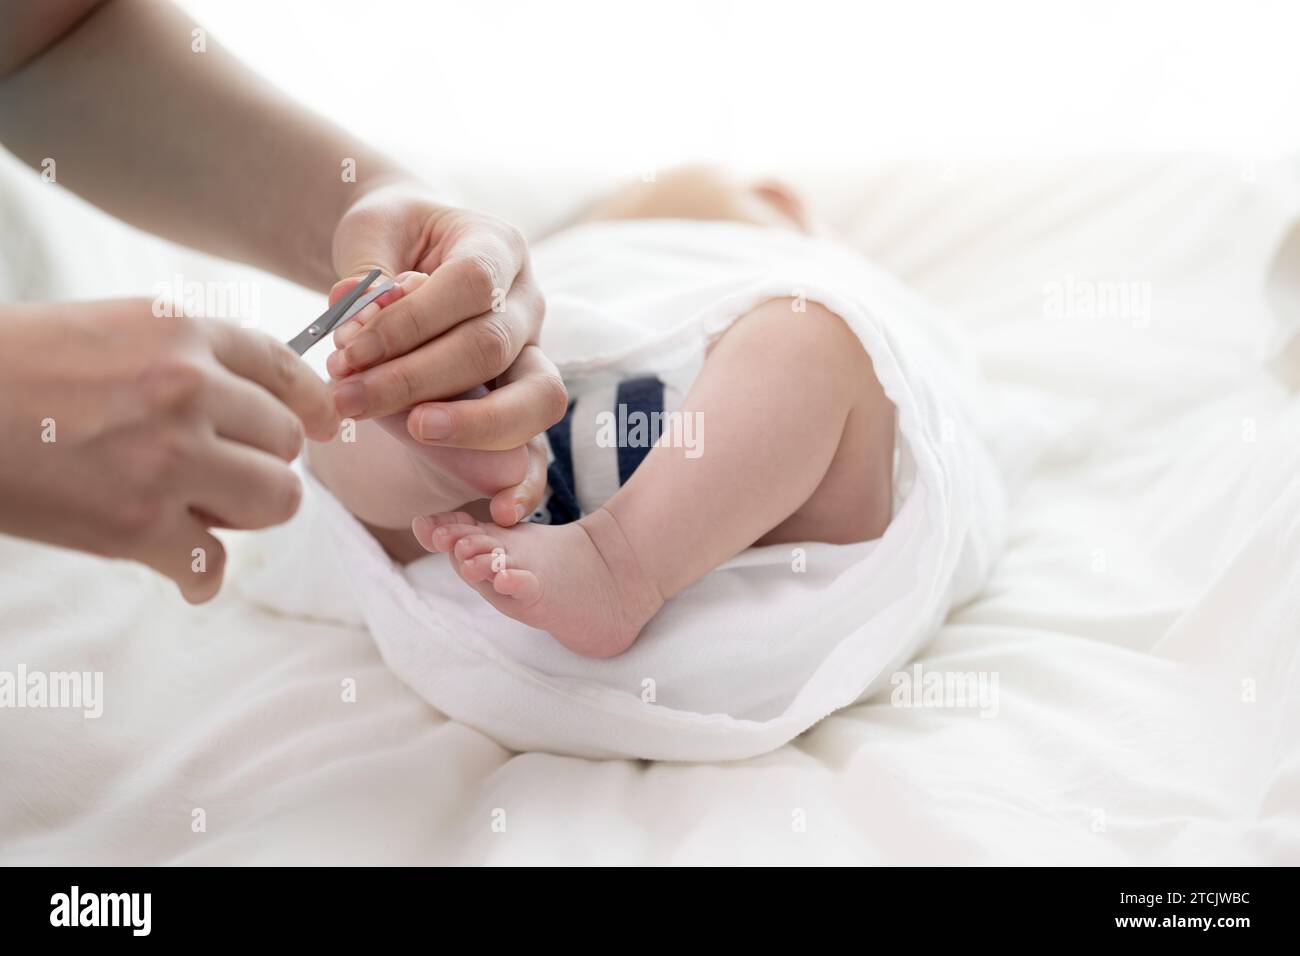 Le mani della mamma tagliano le unghie del neonato con le forbici Foto Stock